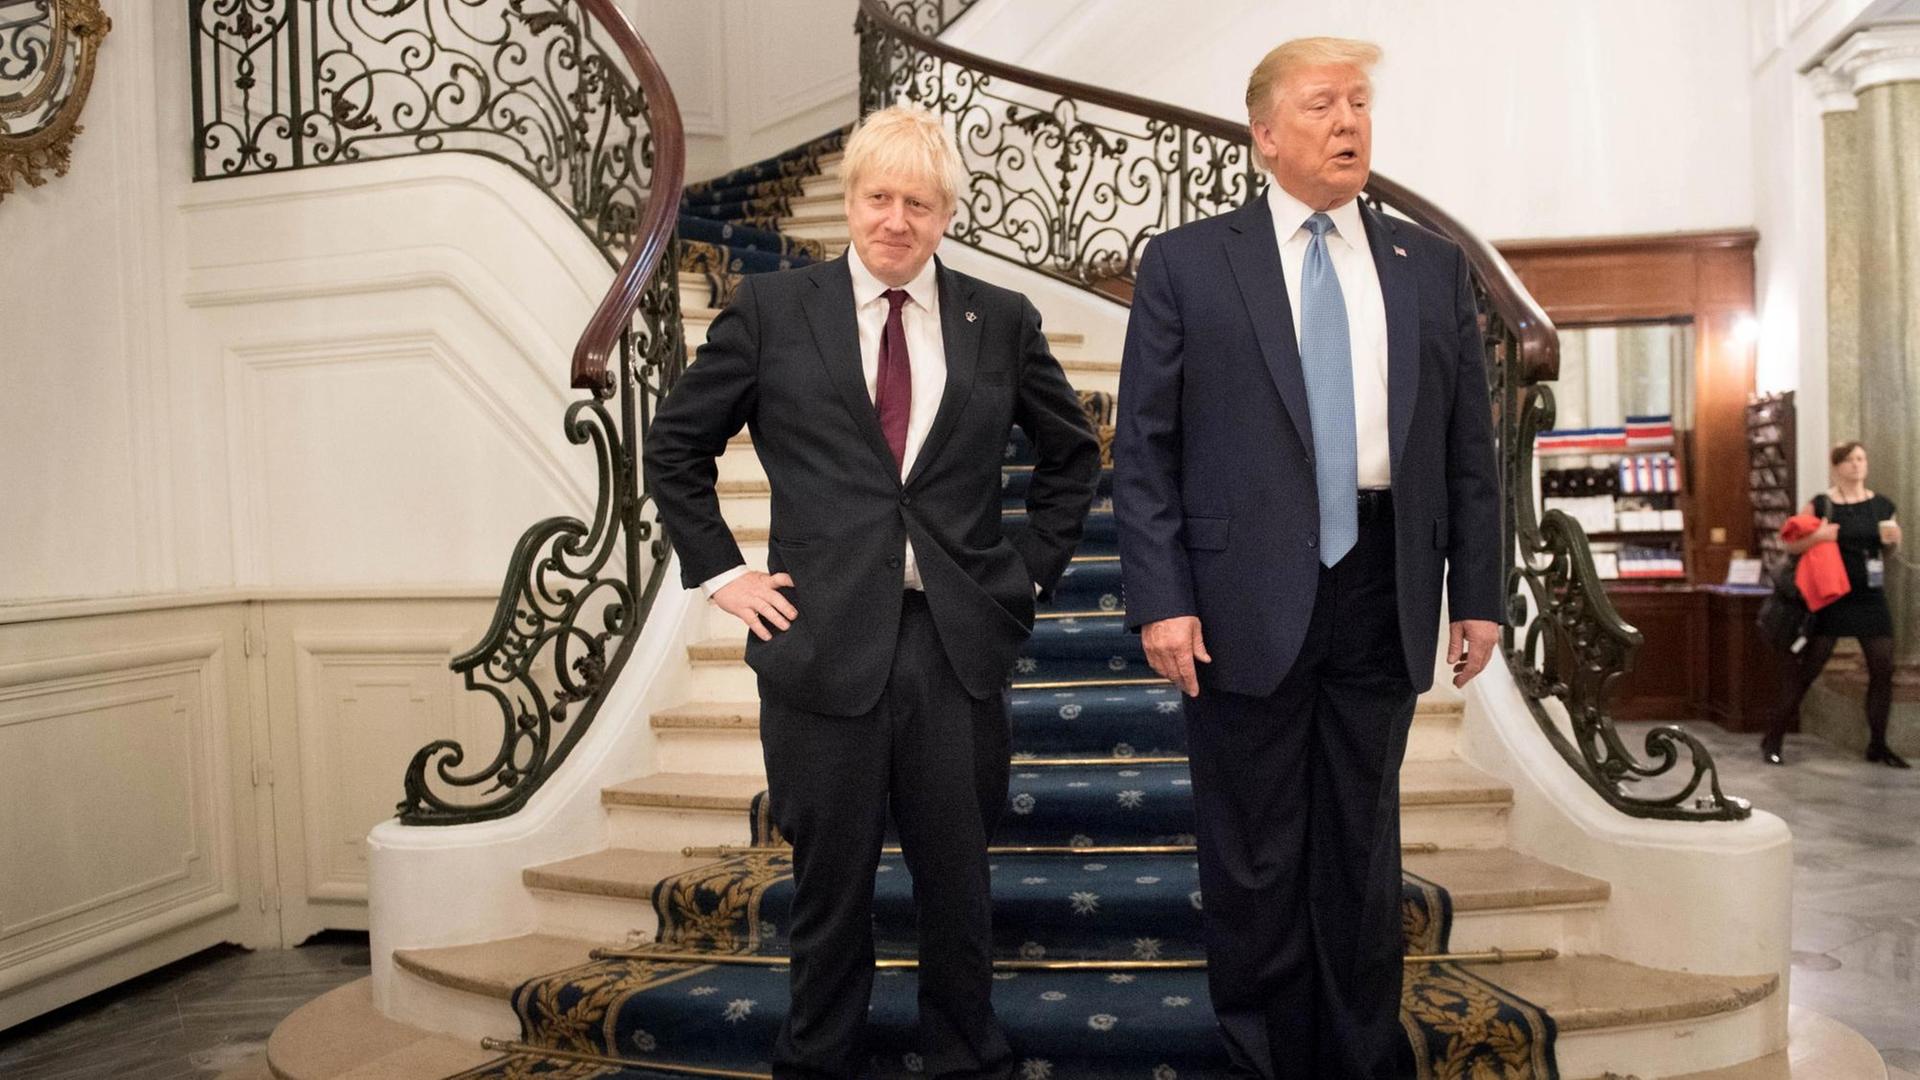 Donald Trump, Präsident der USA, und Boris Johnson, Premierminister von Großbritannien, kommen zu bilateralen Gesprächen eine Treppe herunter.